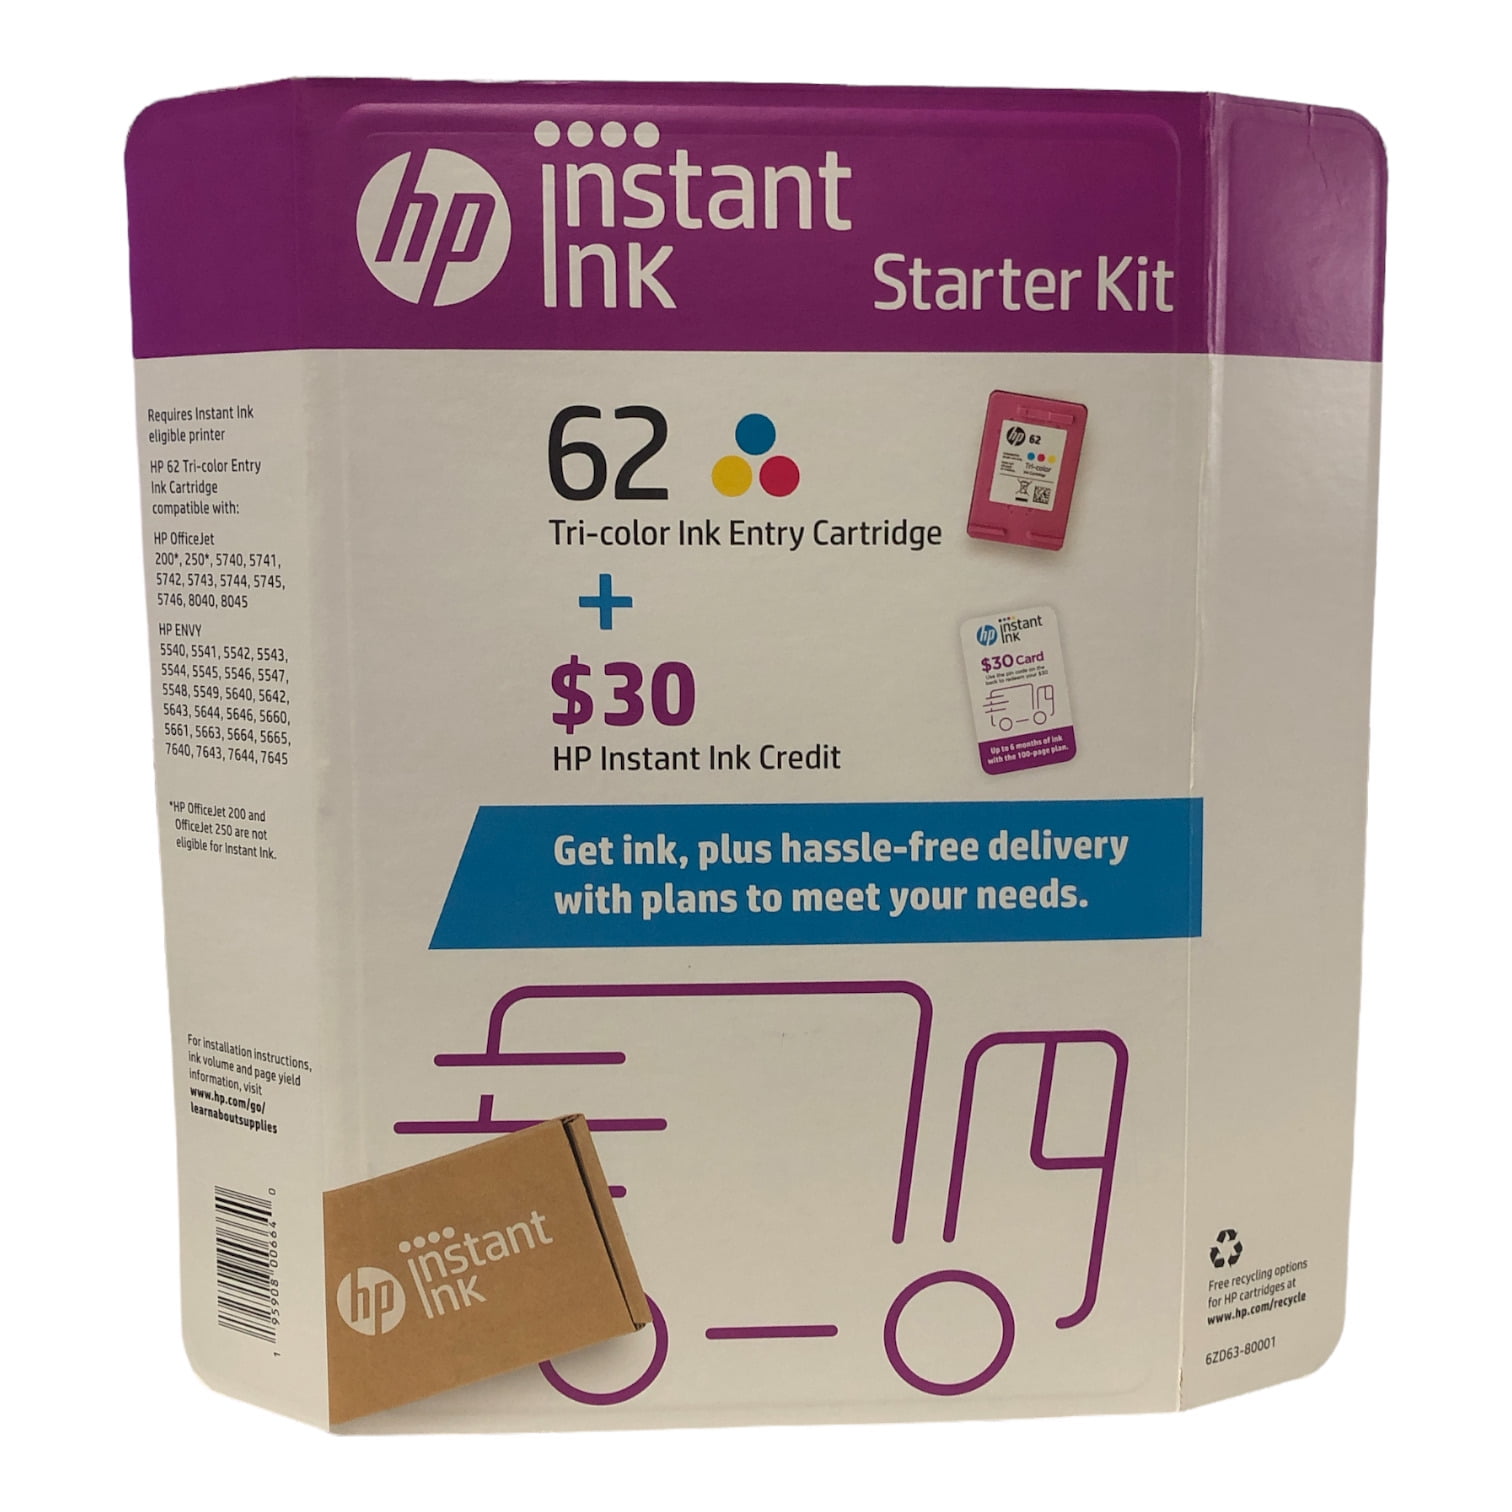 herhaling stijl Stationair HP Instant Ink starter Kit 62 Tri-Color Ink Entry Cartridge EXP: March 2023  - Walmart.com